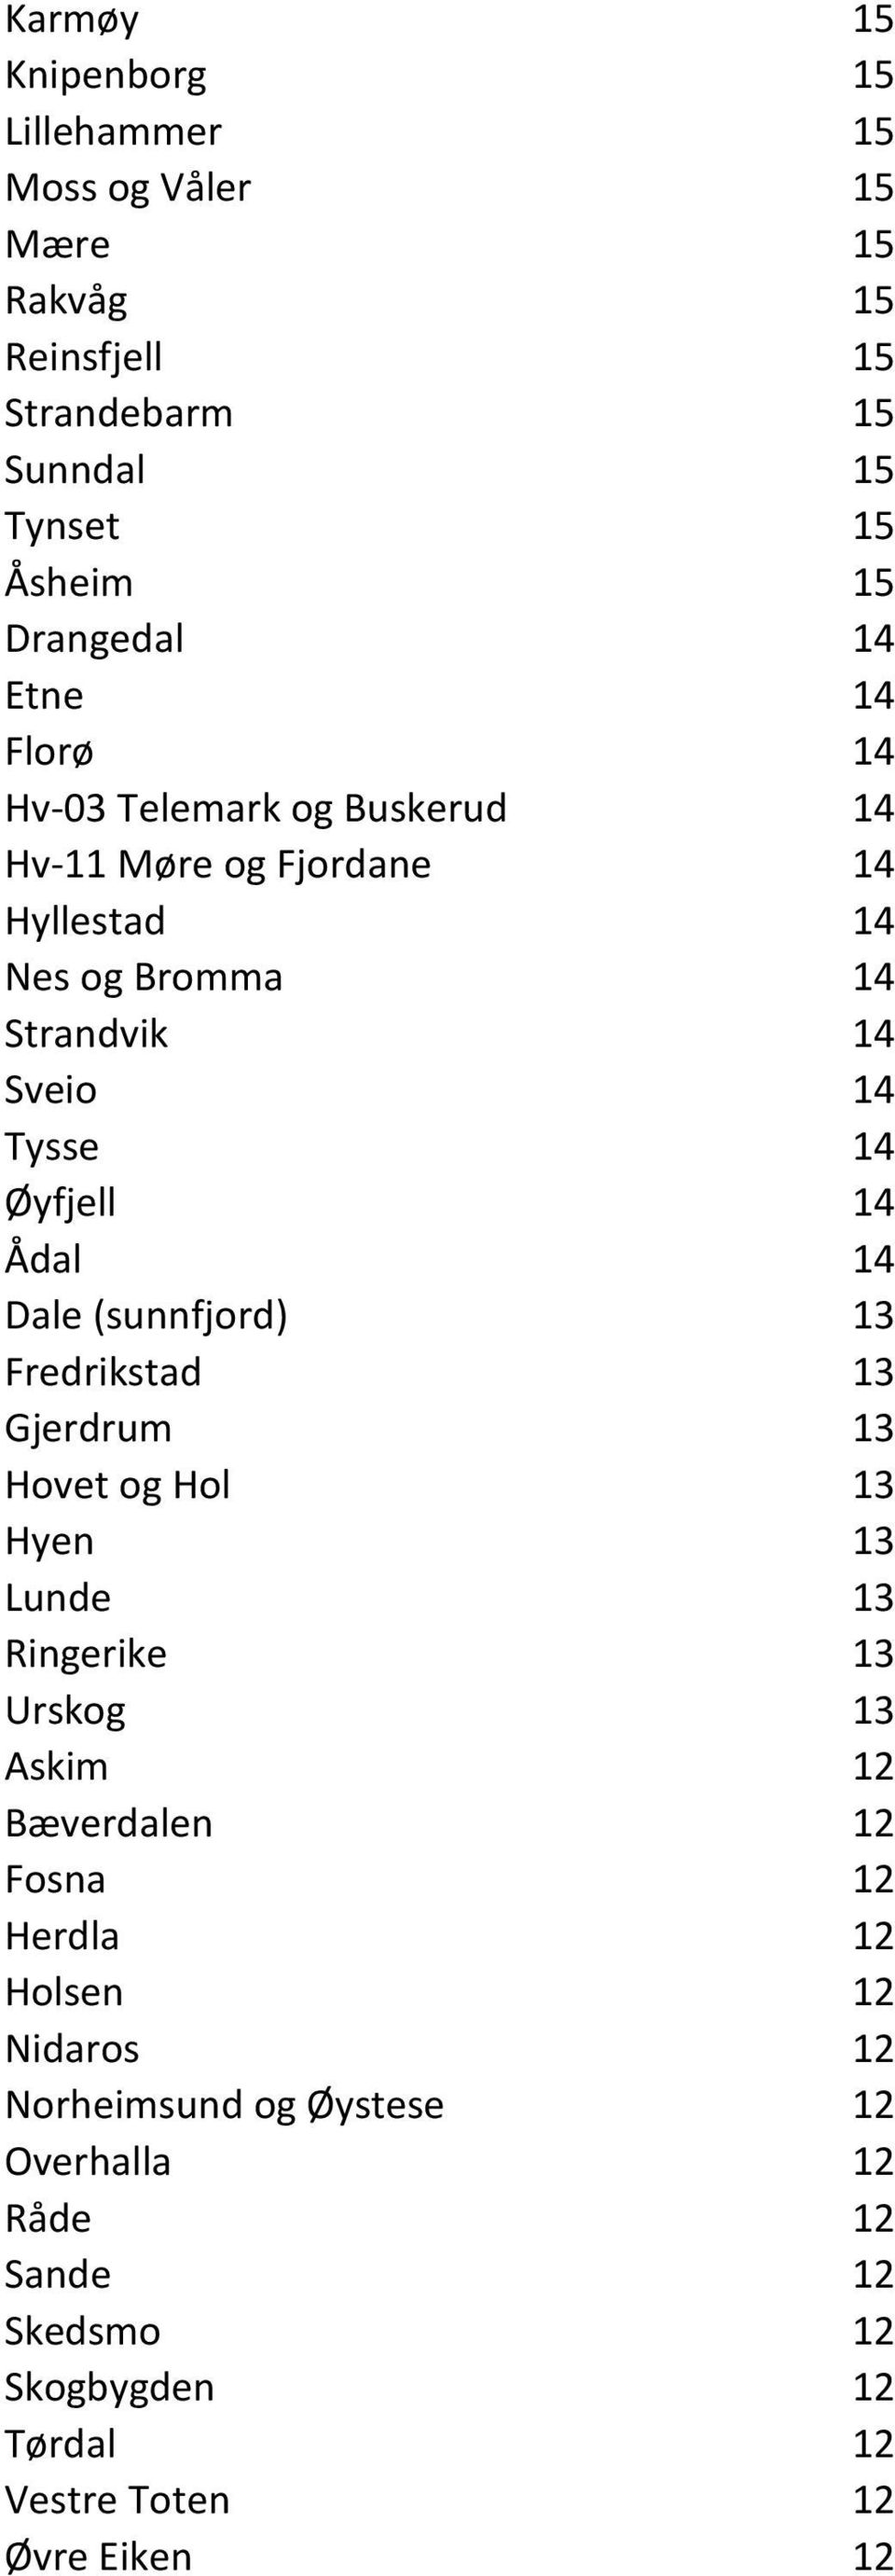 Ådal 14 Dale (sunnfjord) 13 Fredrikstad 13 Gjerdrum 13 Hovet og Hol 13 Hyen 13 Lunde 13 Ringerike 13 Urskog 13 Askim 12 Bæverdalen 12 Fosna 12